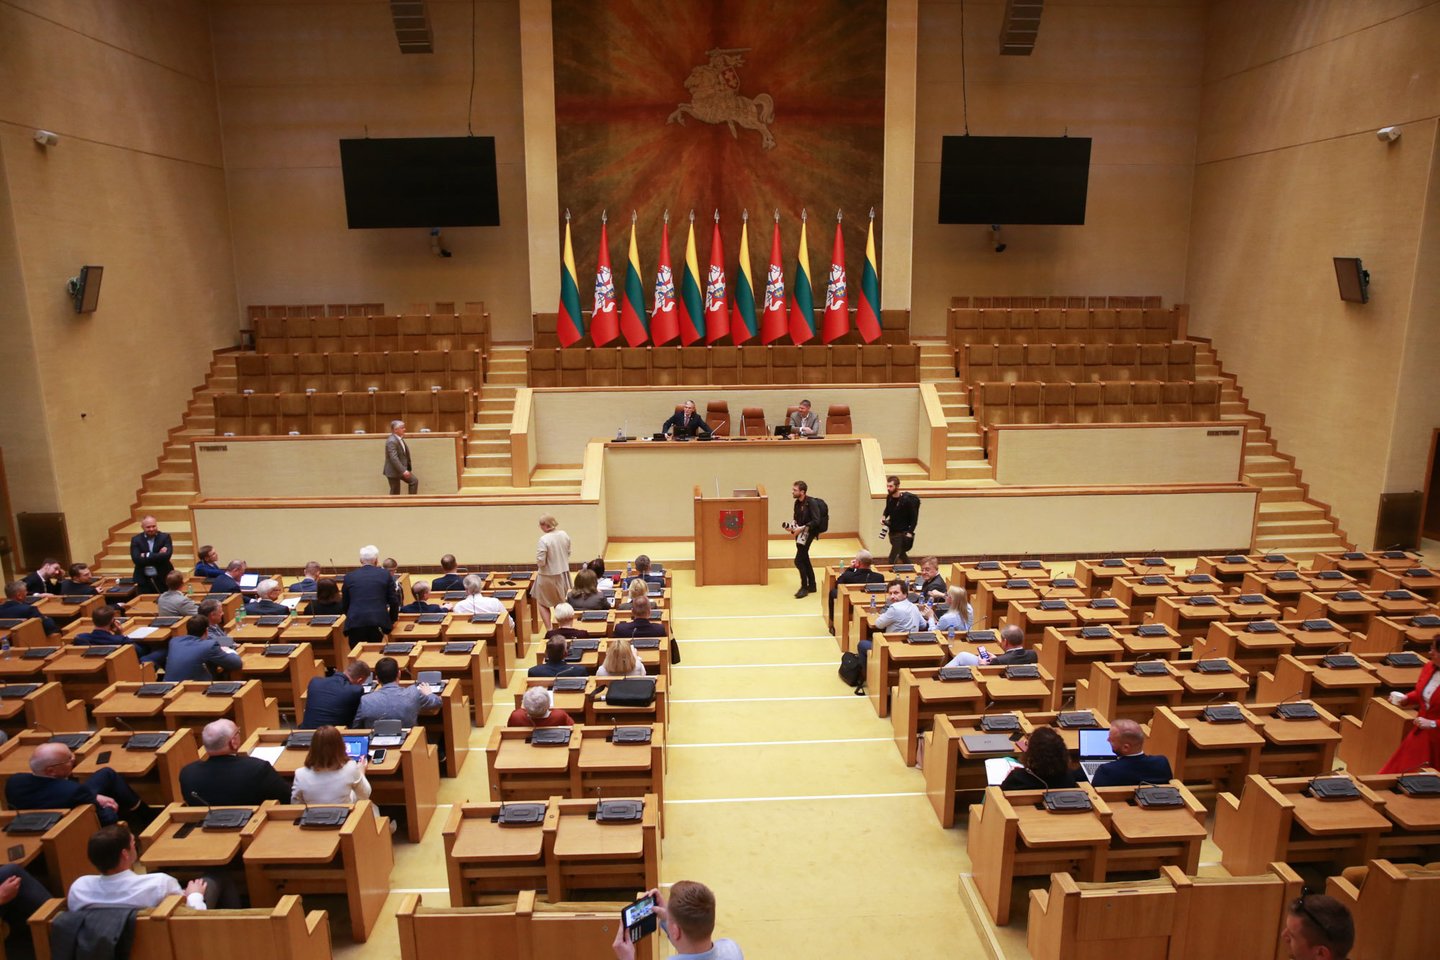 Nors ir sulaukusi atsiprašymo, opozicija paliko Seimo salę ir iškeliavo dirbti atskirai.<br>R.Danisevičiaus nuotr.